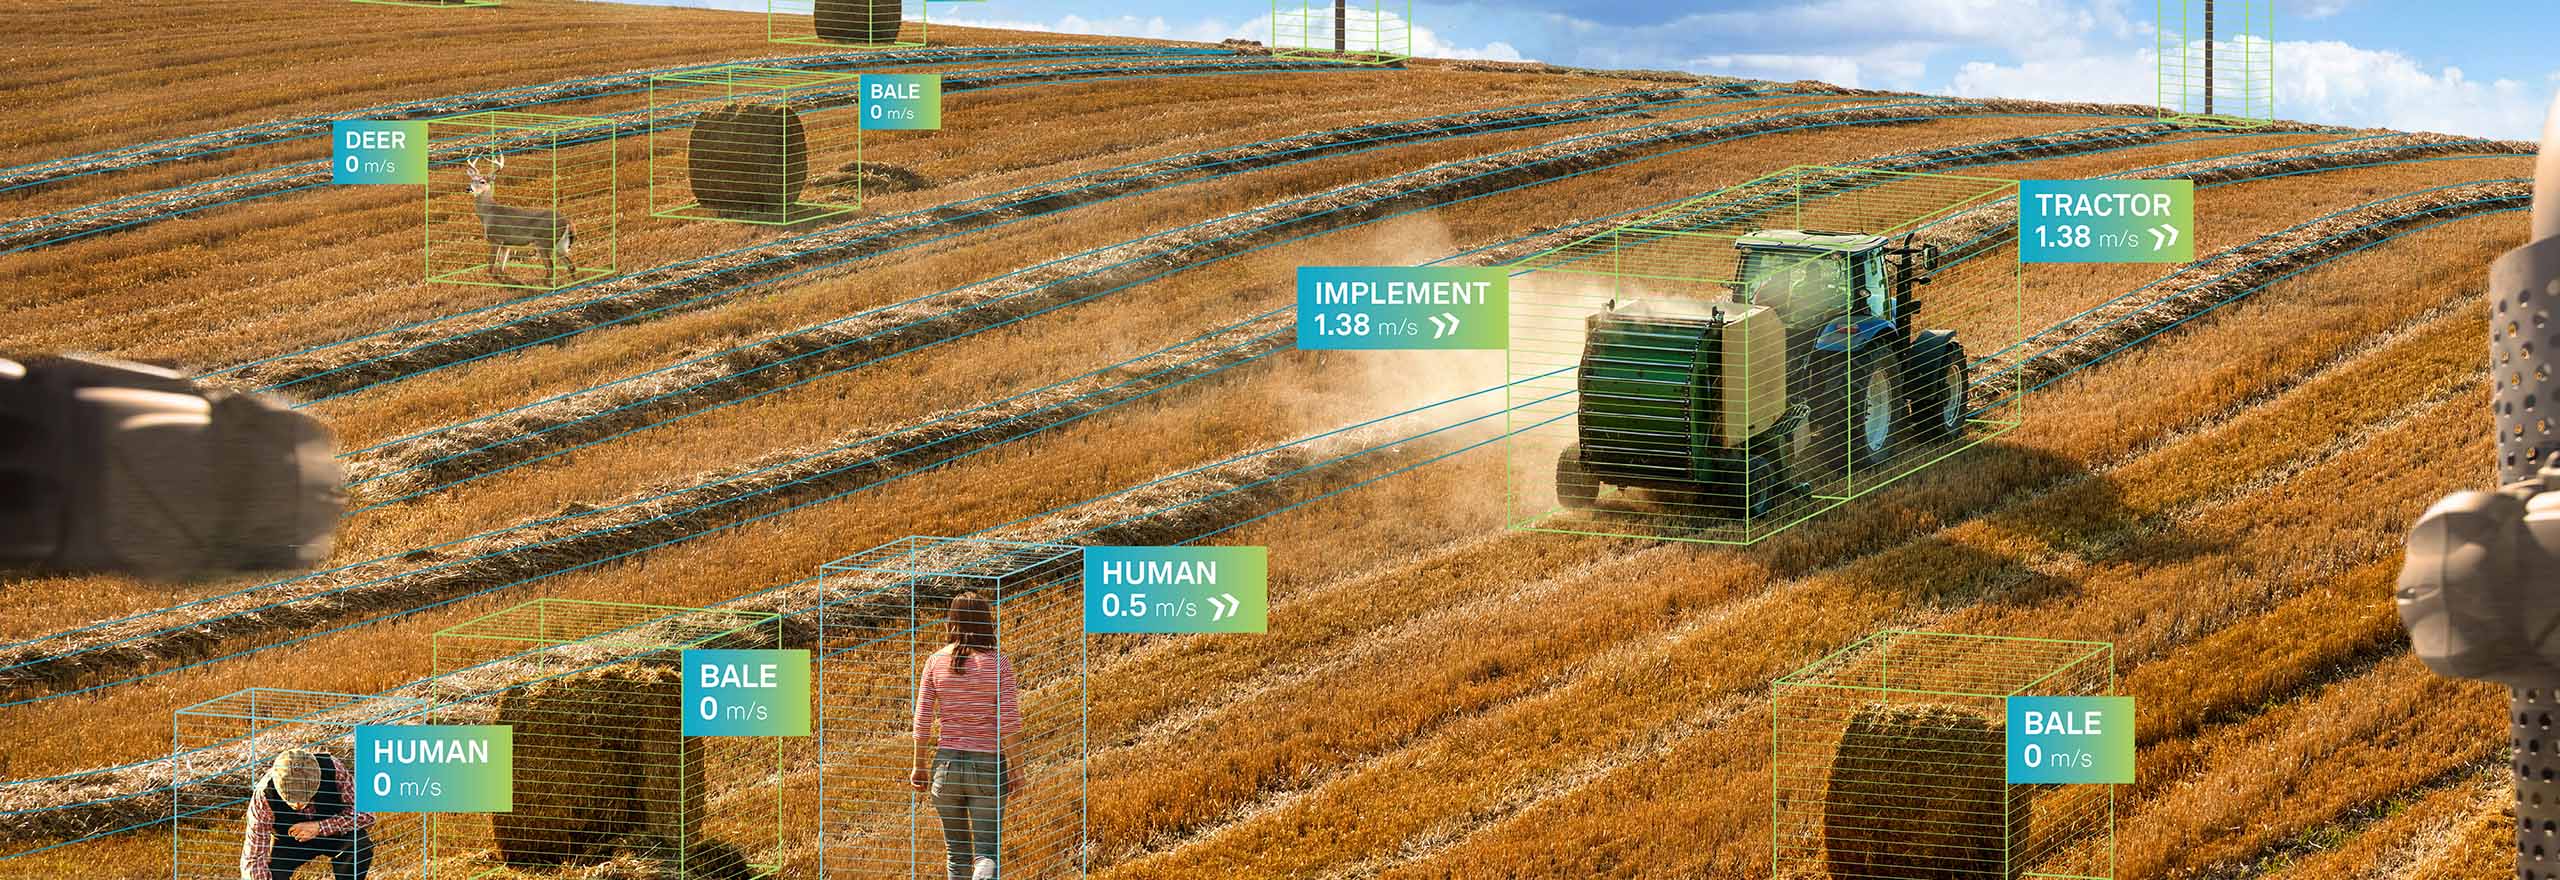 スマート農業環境で現場で活躍するHexagon自律型トラクター